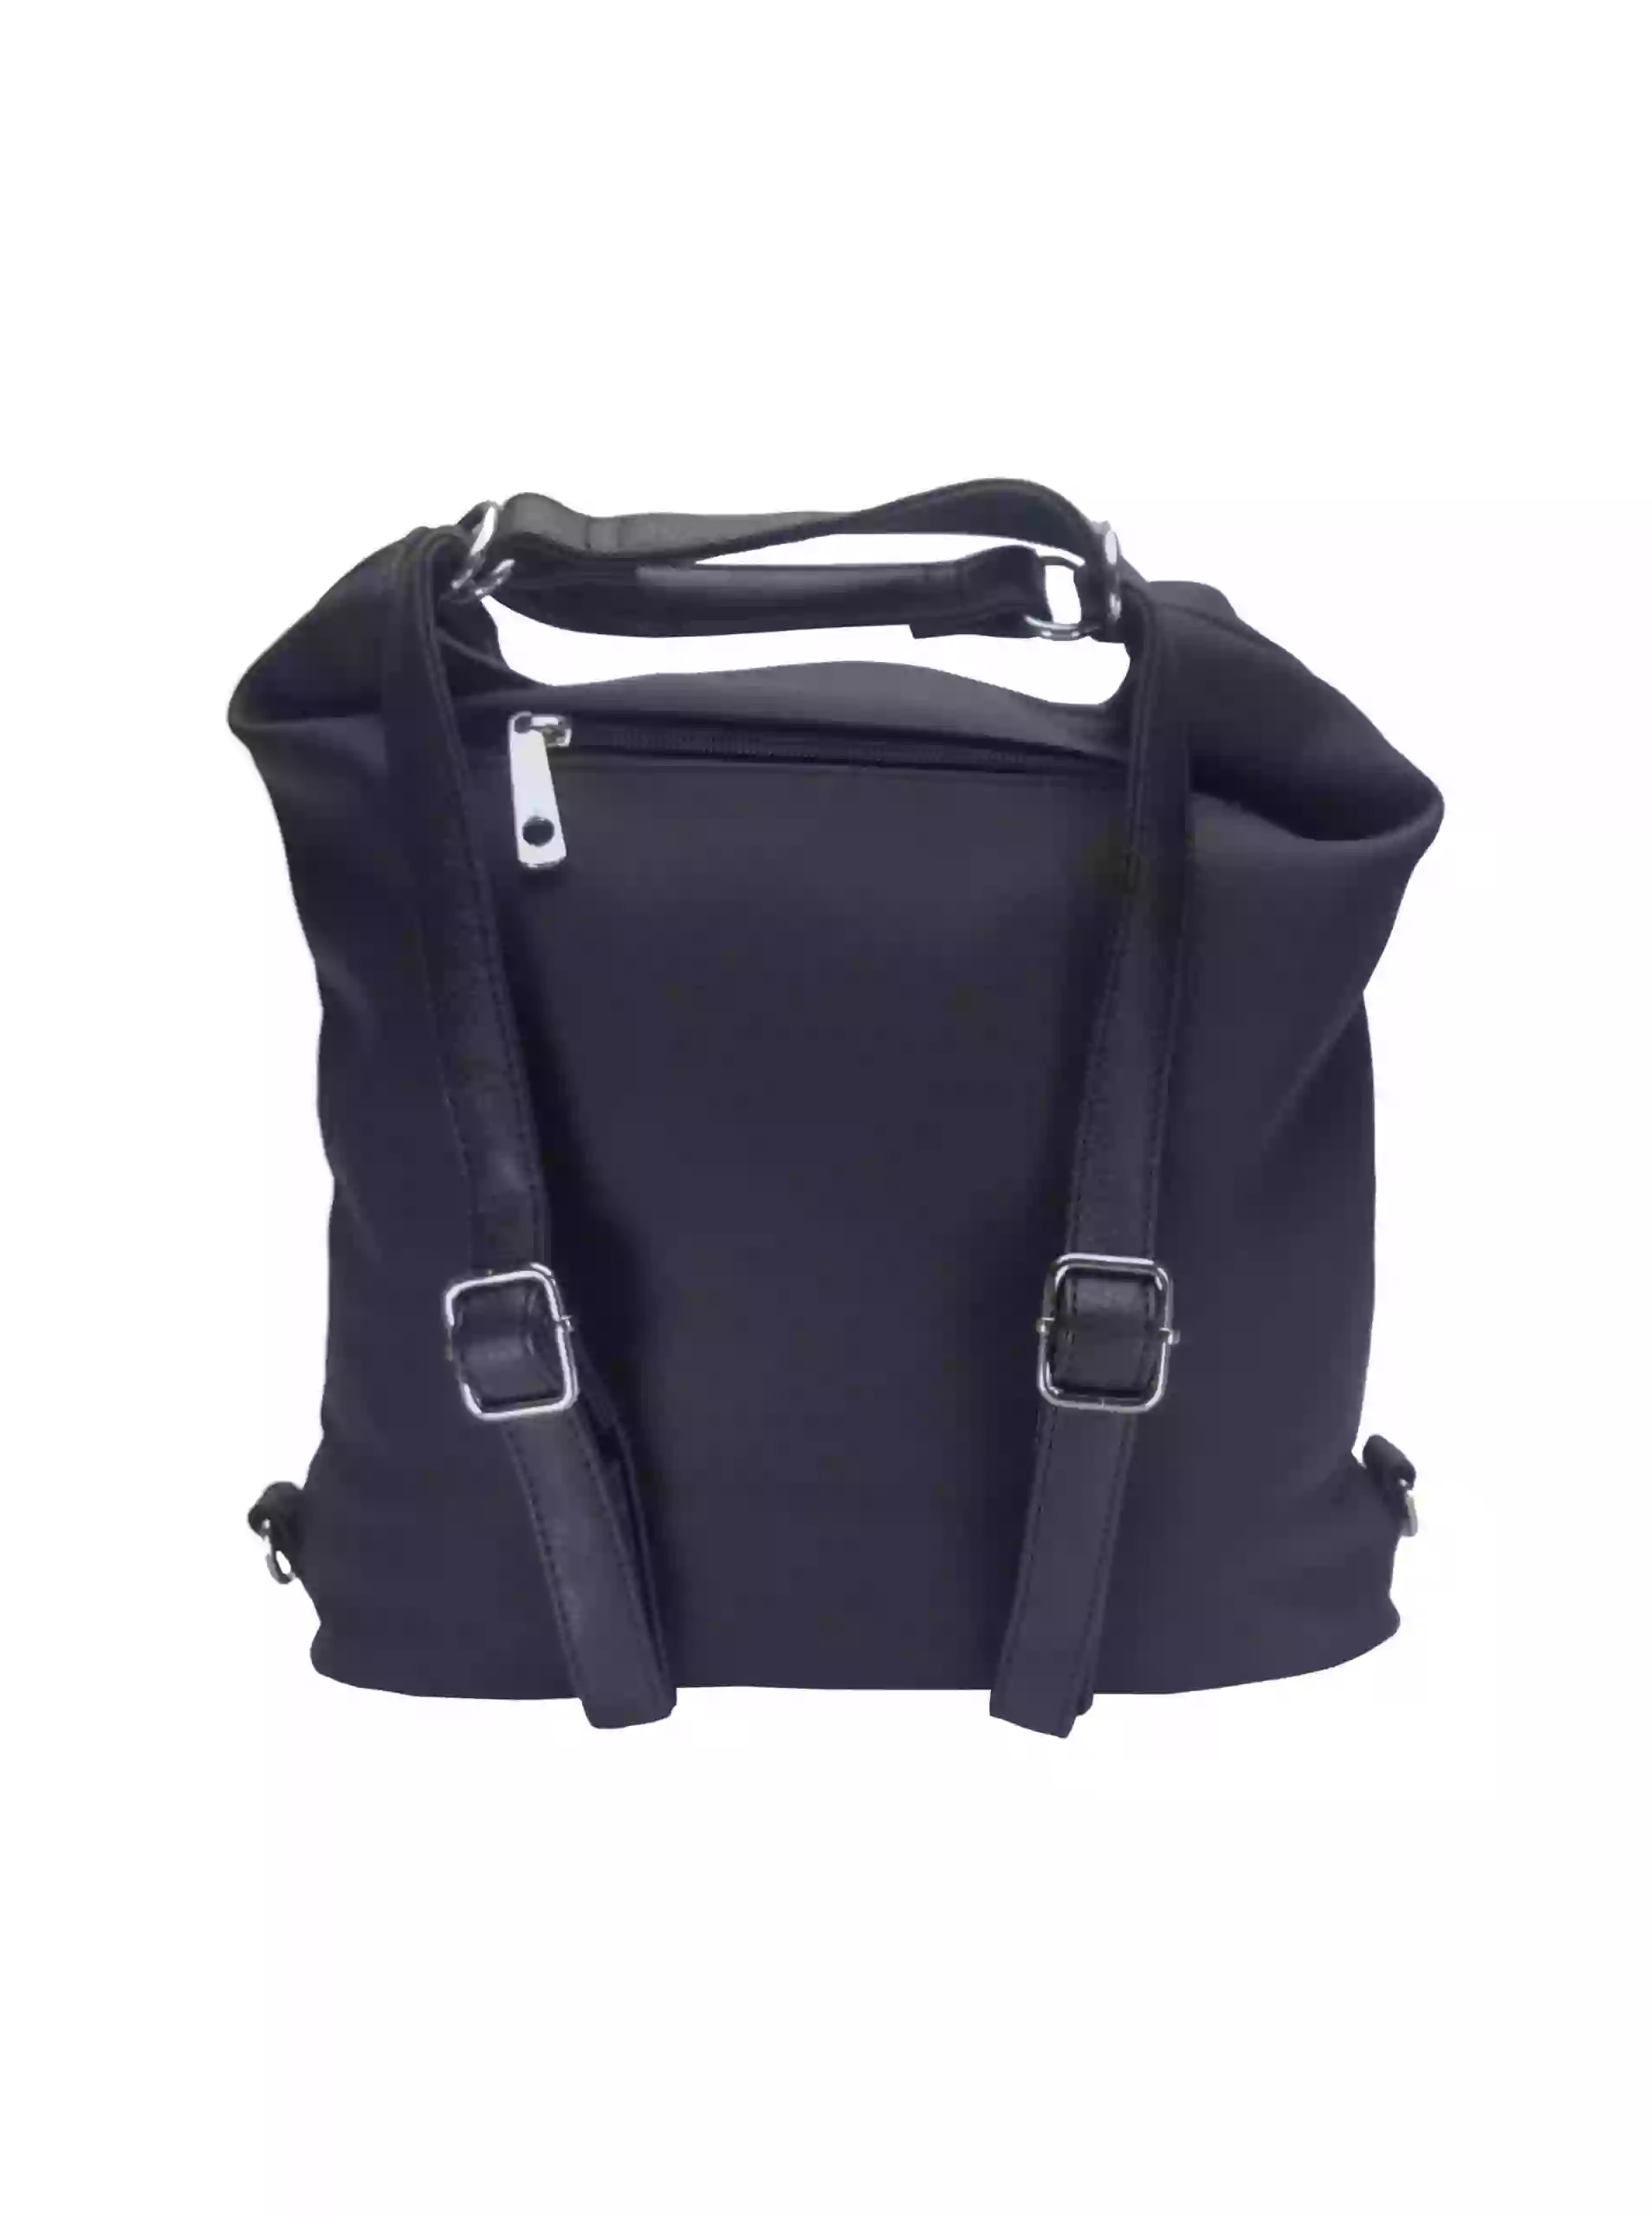 Střední černý kabelko-batoh 2v1 s praktickou kapsou, Tapple, H190062, zadní strana kabelko-batohu s popruhy